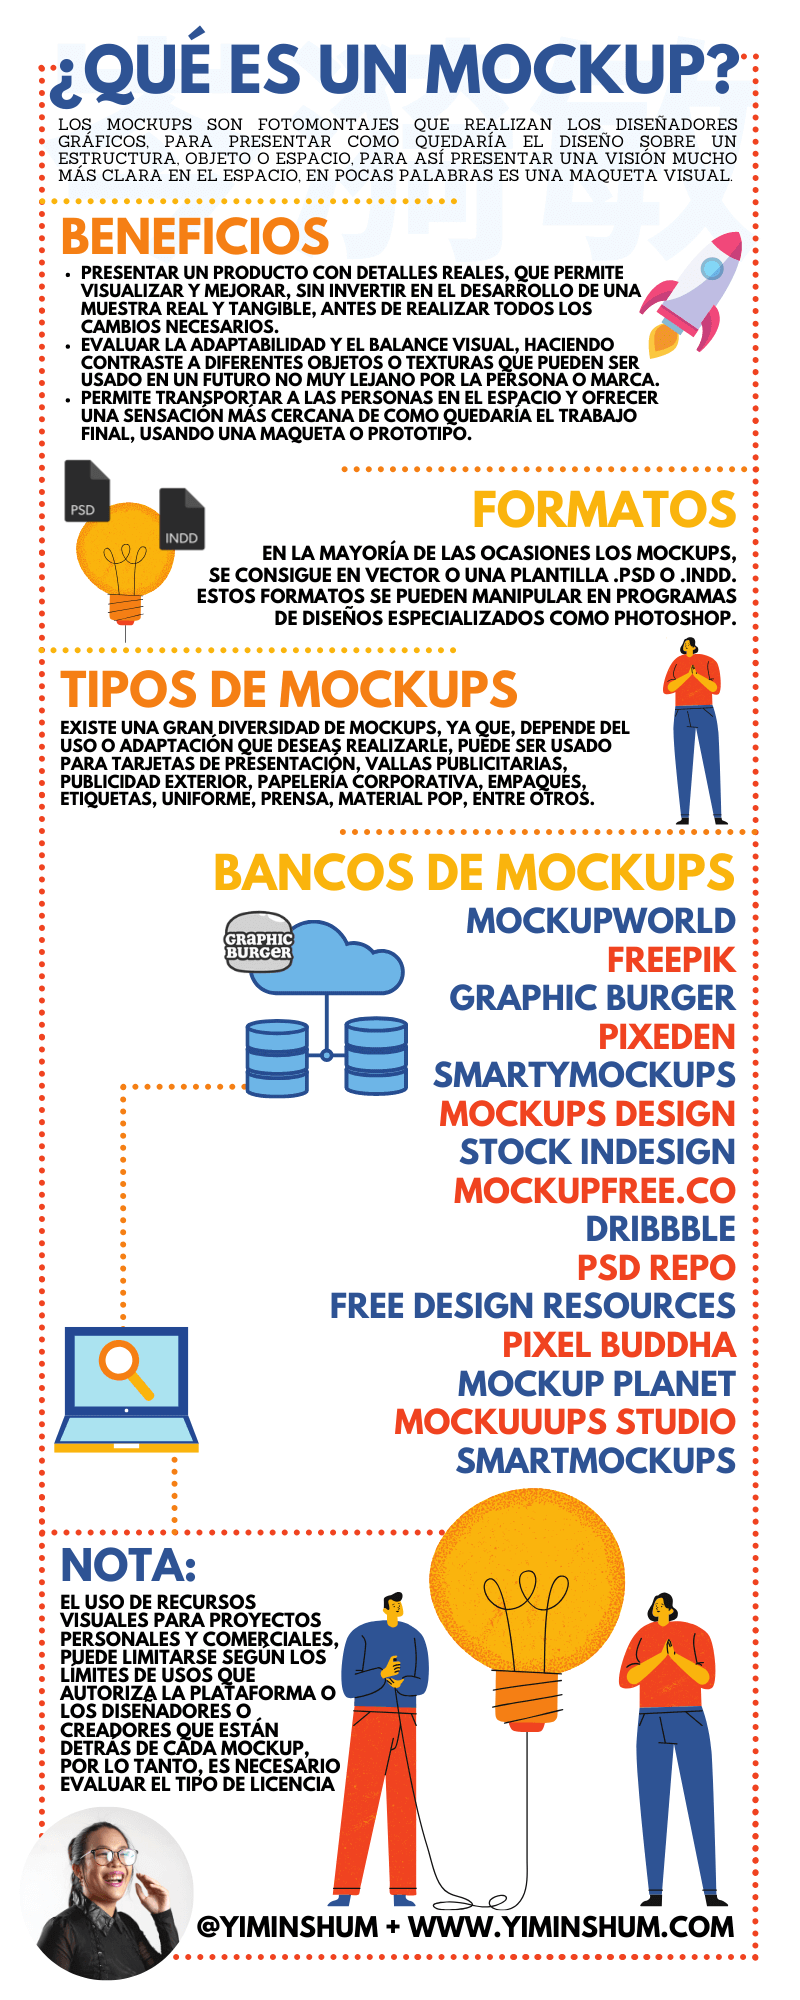 Download 15 Buscadores O Bancos De Mockups O Mock Ups Gratis